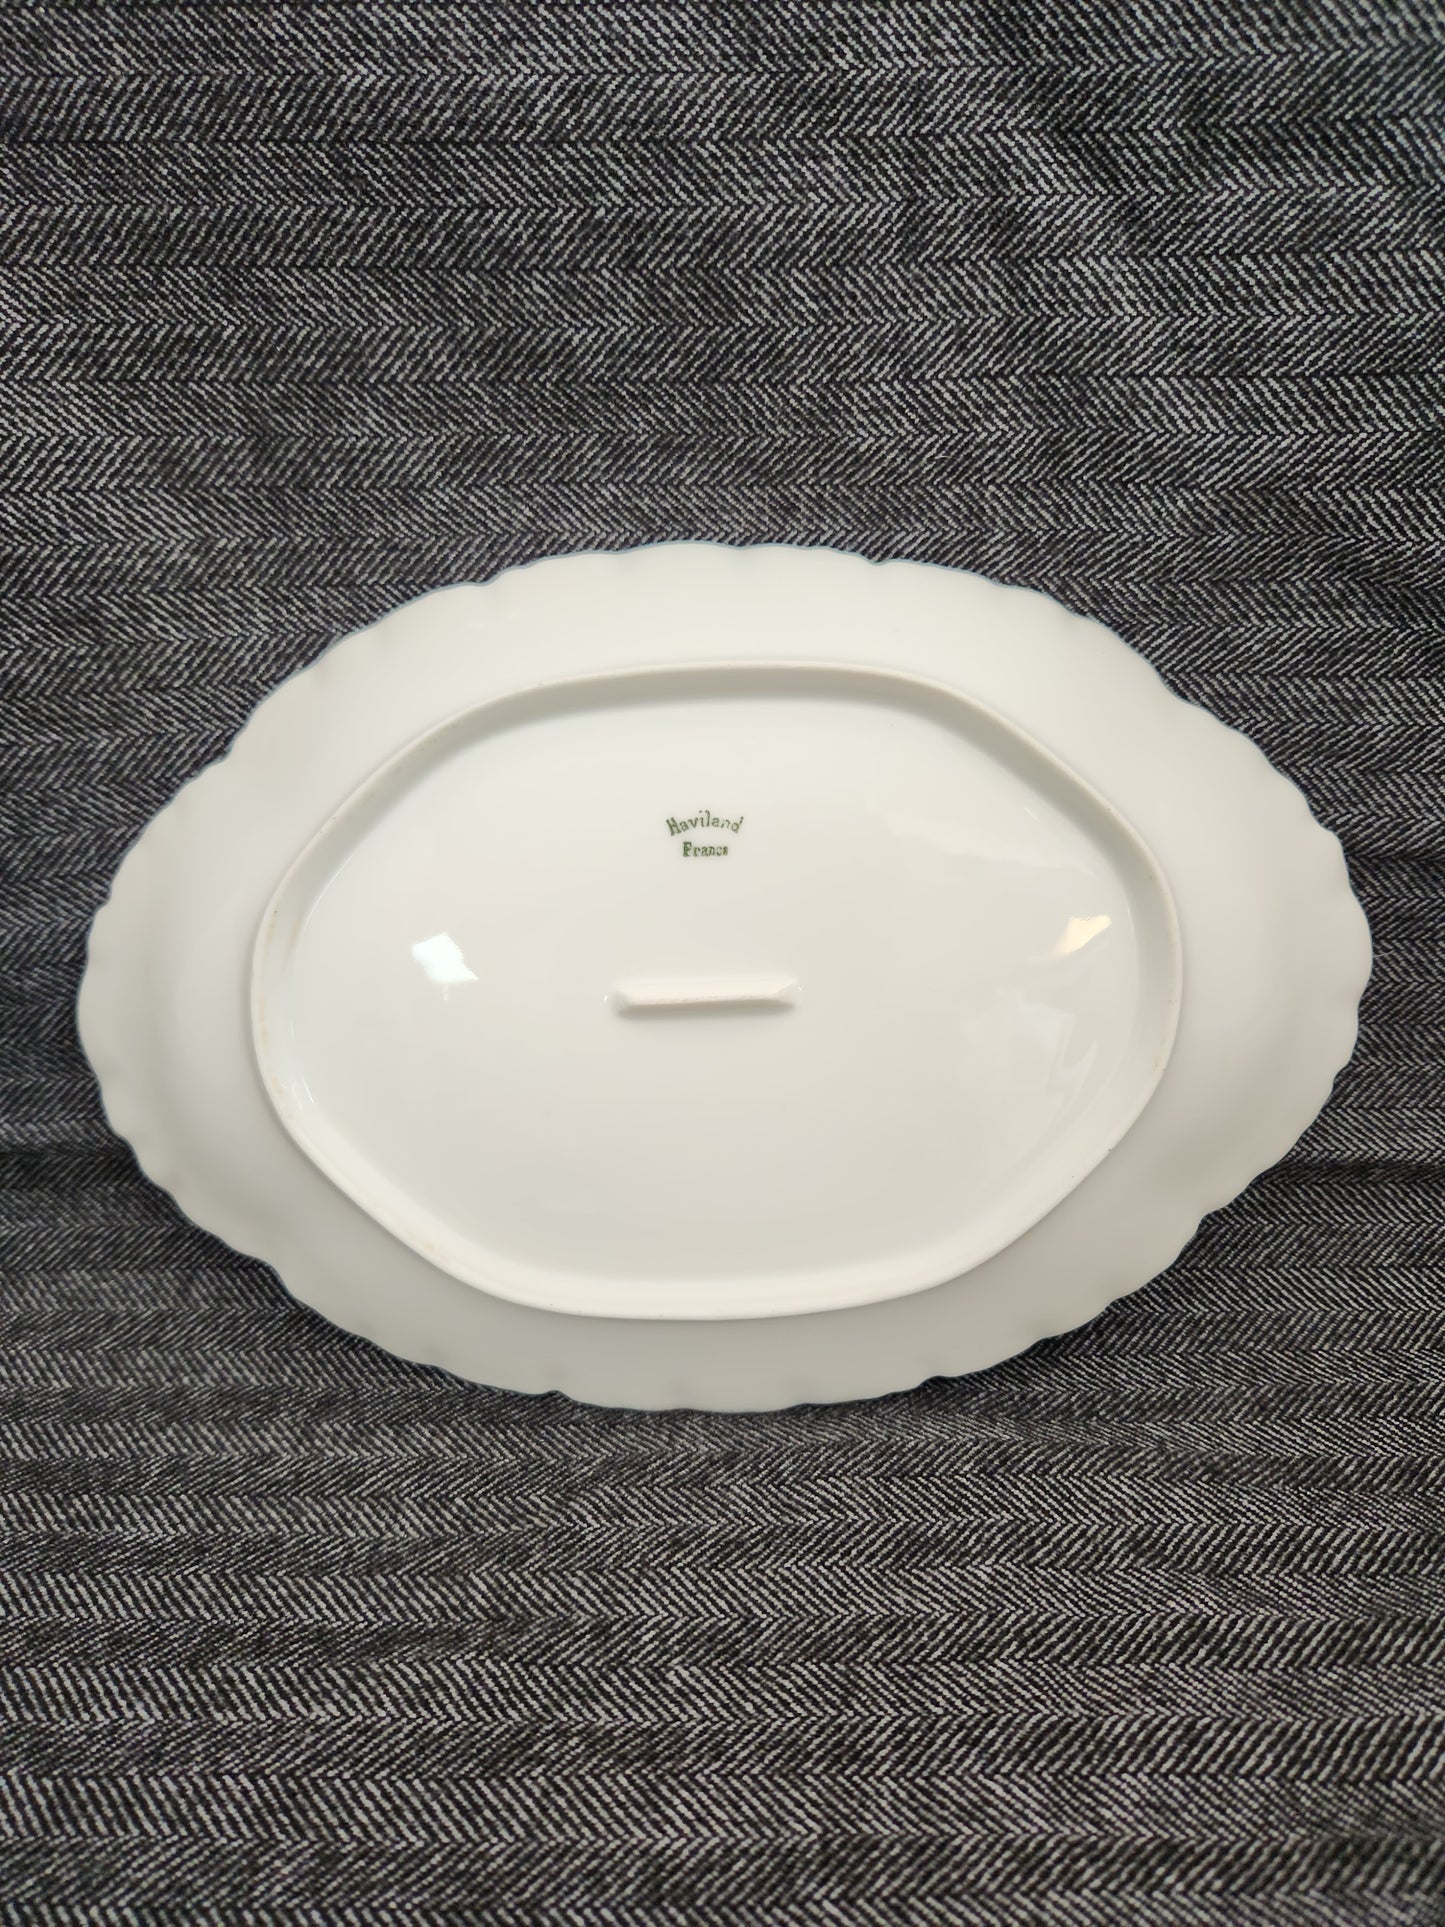 Haviland Ranson 11-1/2" Oval Serving Platter